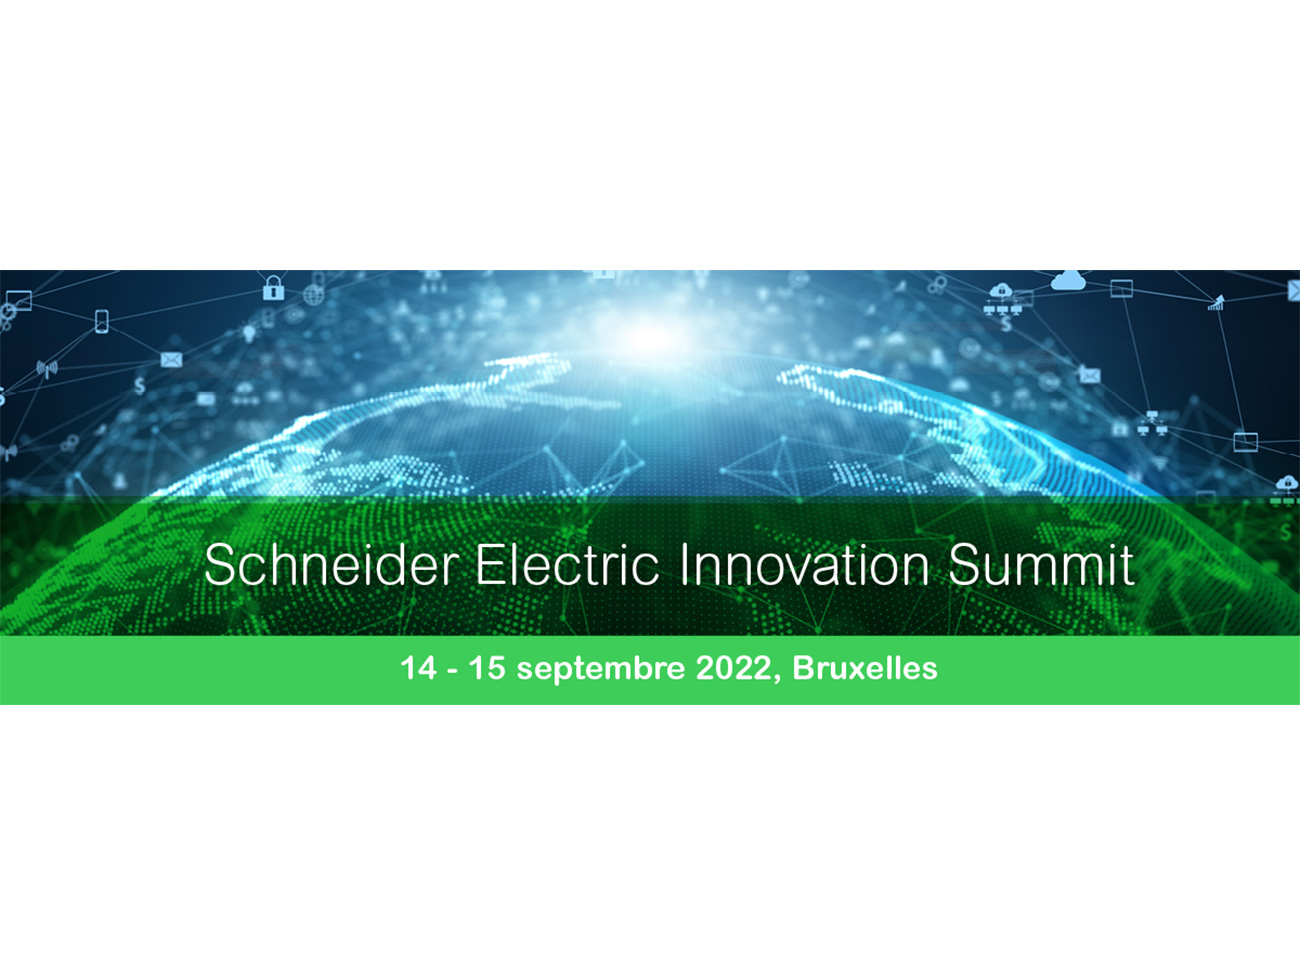 d&b-event-schneider-innovation-summit_banner_1200x400